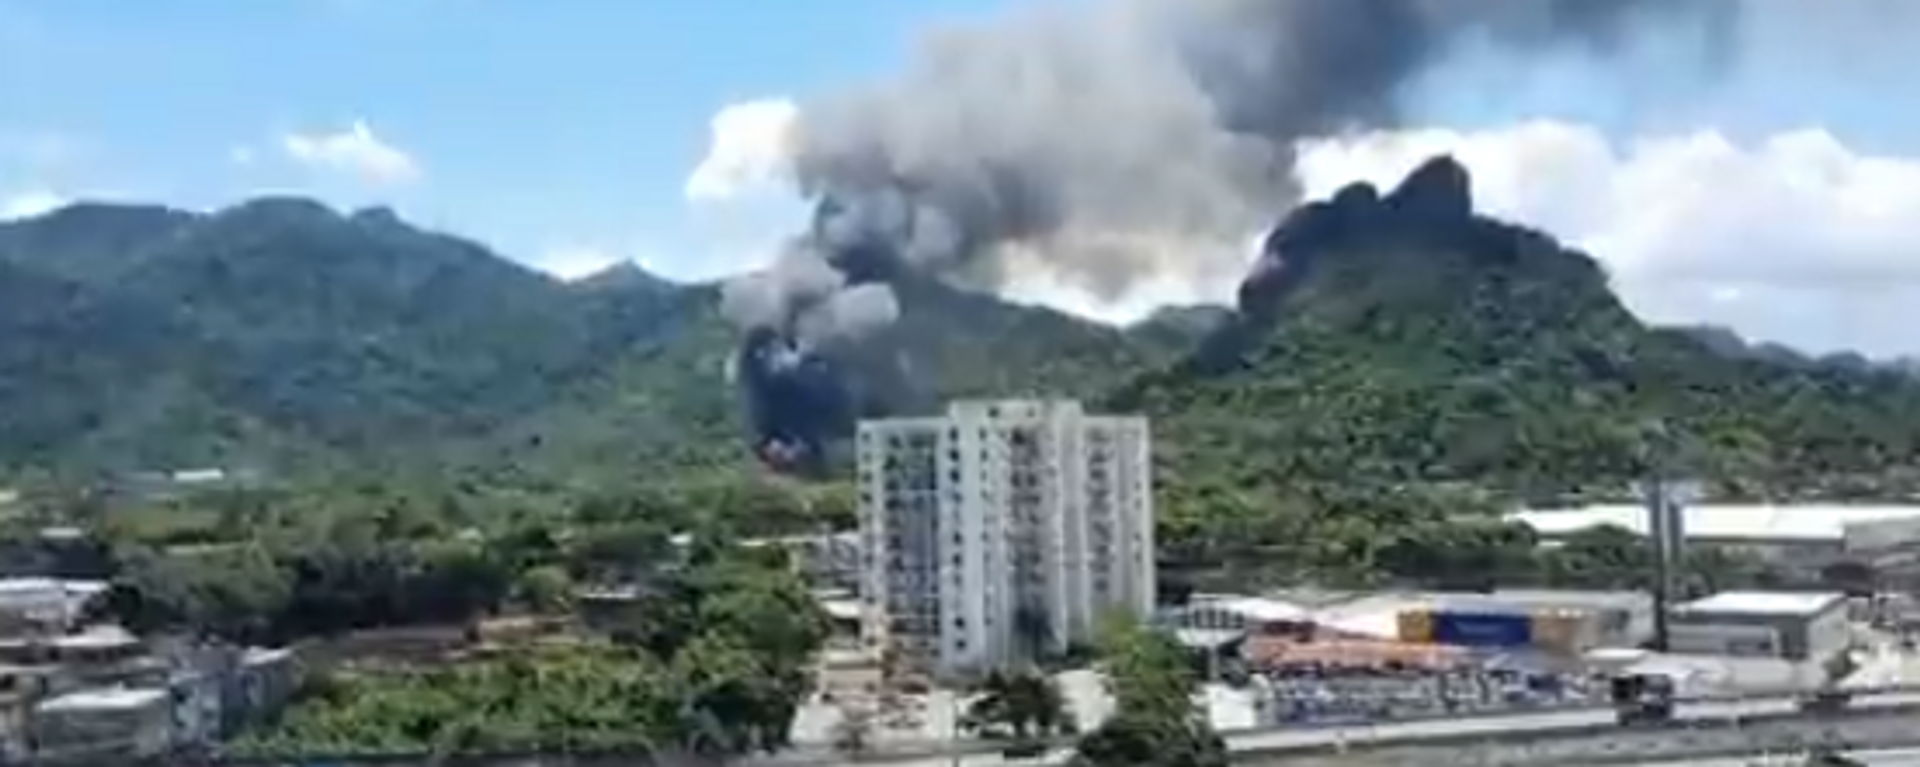 Incêndio atinge área dos Estúdios Globo, no Rio de Janeiro, em 18 de novembro de 2022 - Sputnik Brasil, 1920, 18.11.2022